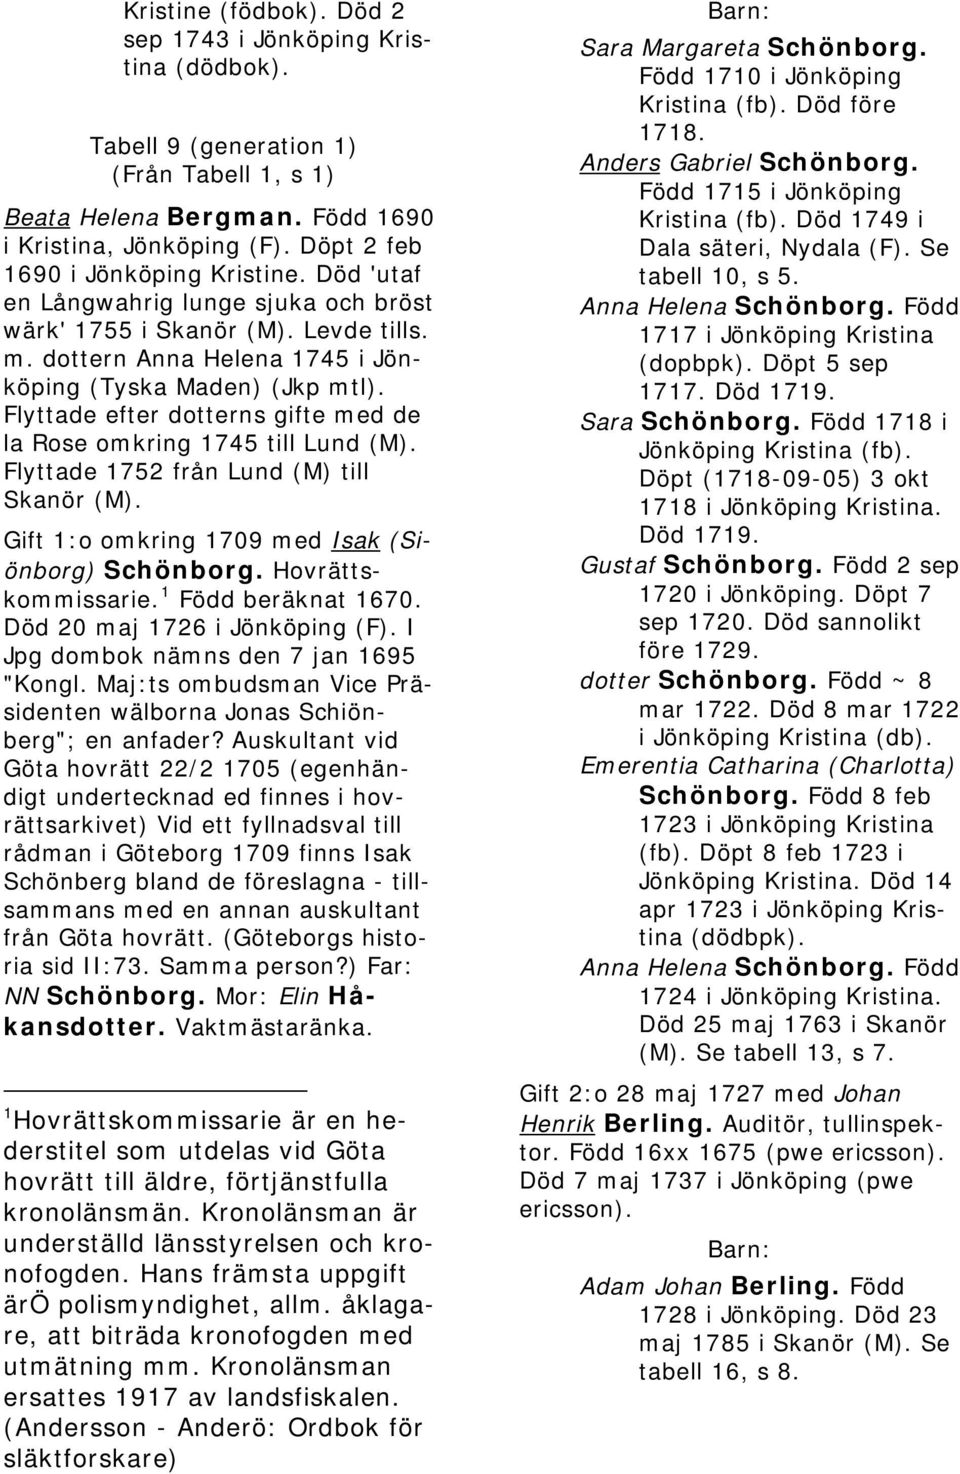 Flyttade efter dotterns gifte med de la Rose omkring 1745 till Lund (M). Flyttade 1752 från Lund (M) till Skanör (M). Gift 1:o omkring 1709 med Isak (Siönborg) Schönborg. Hovrättskommissarie.